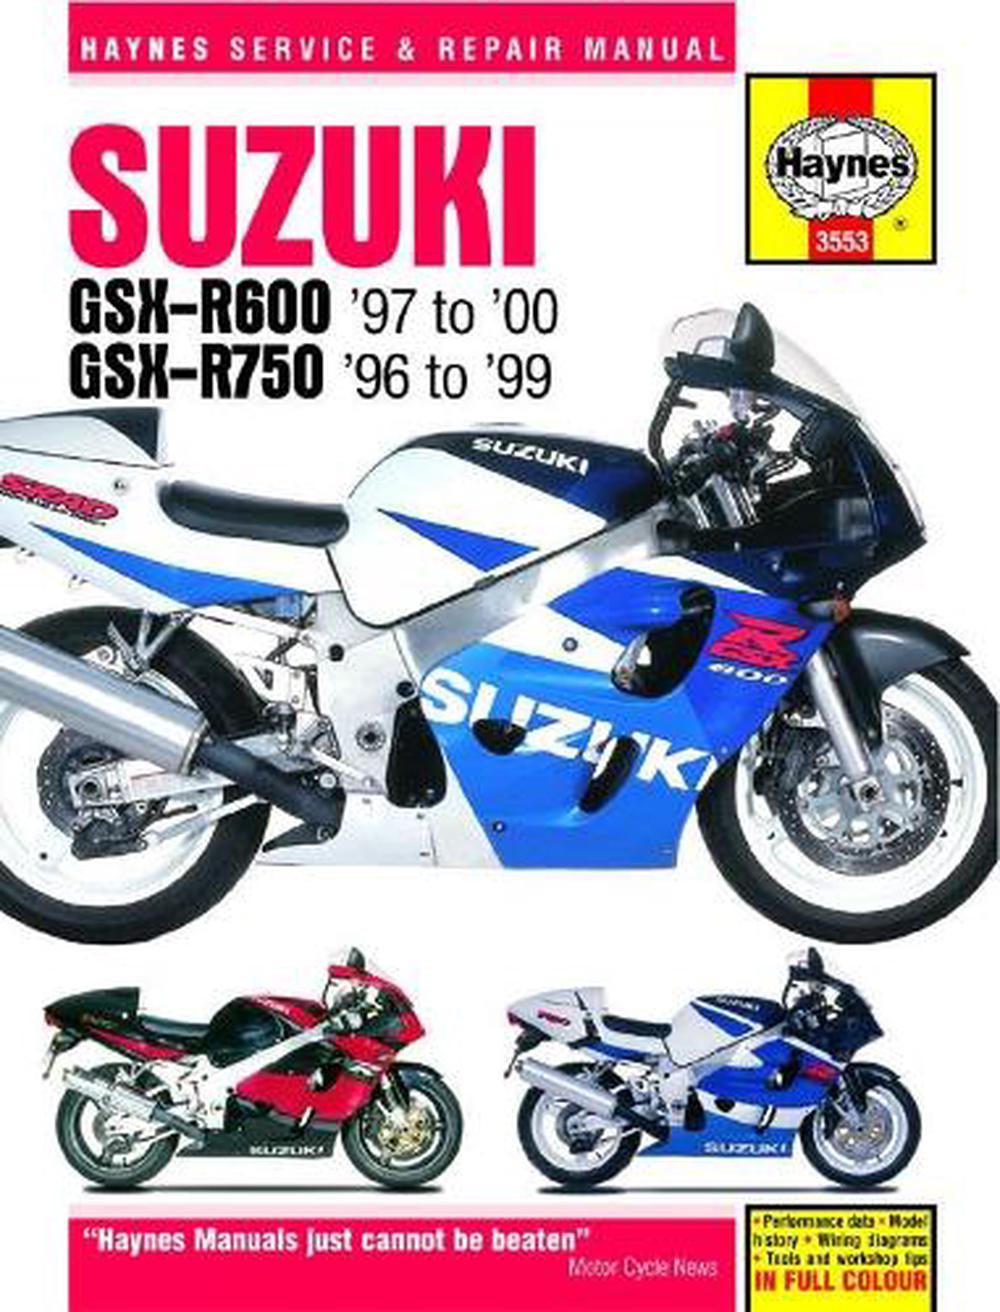 suzuki motorcycle repair manual